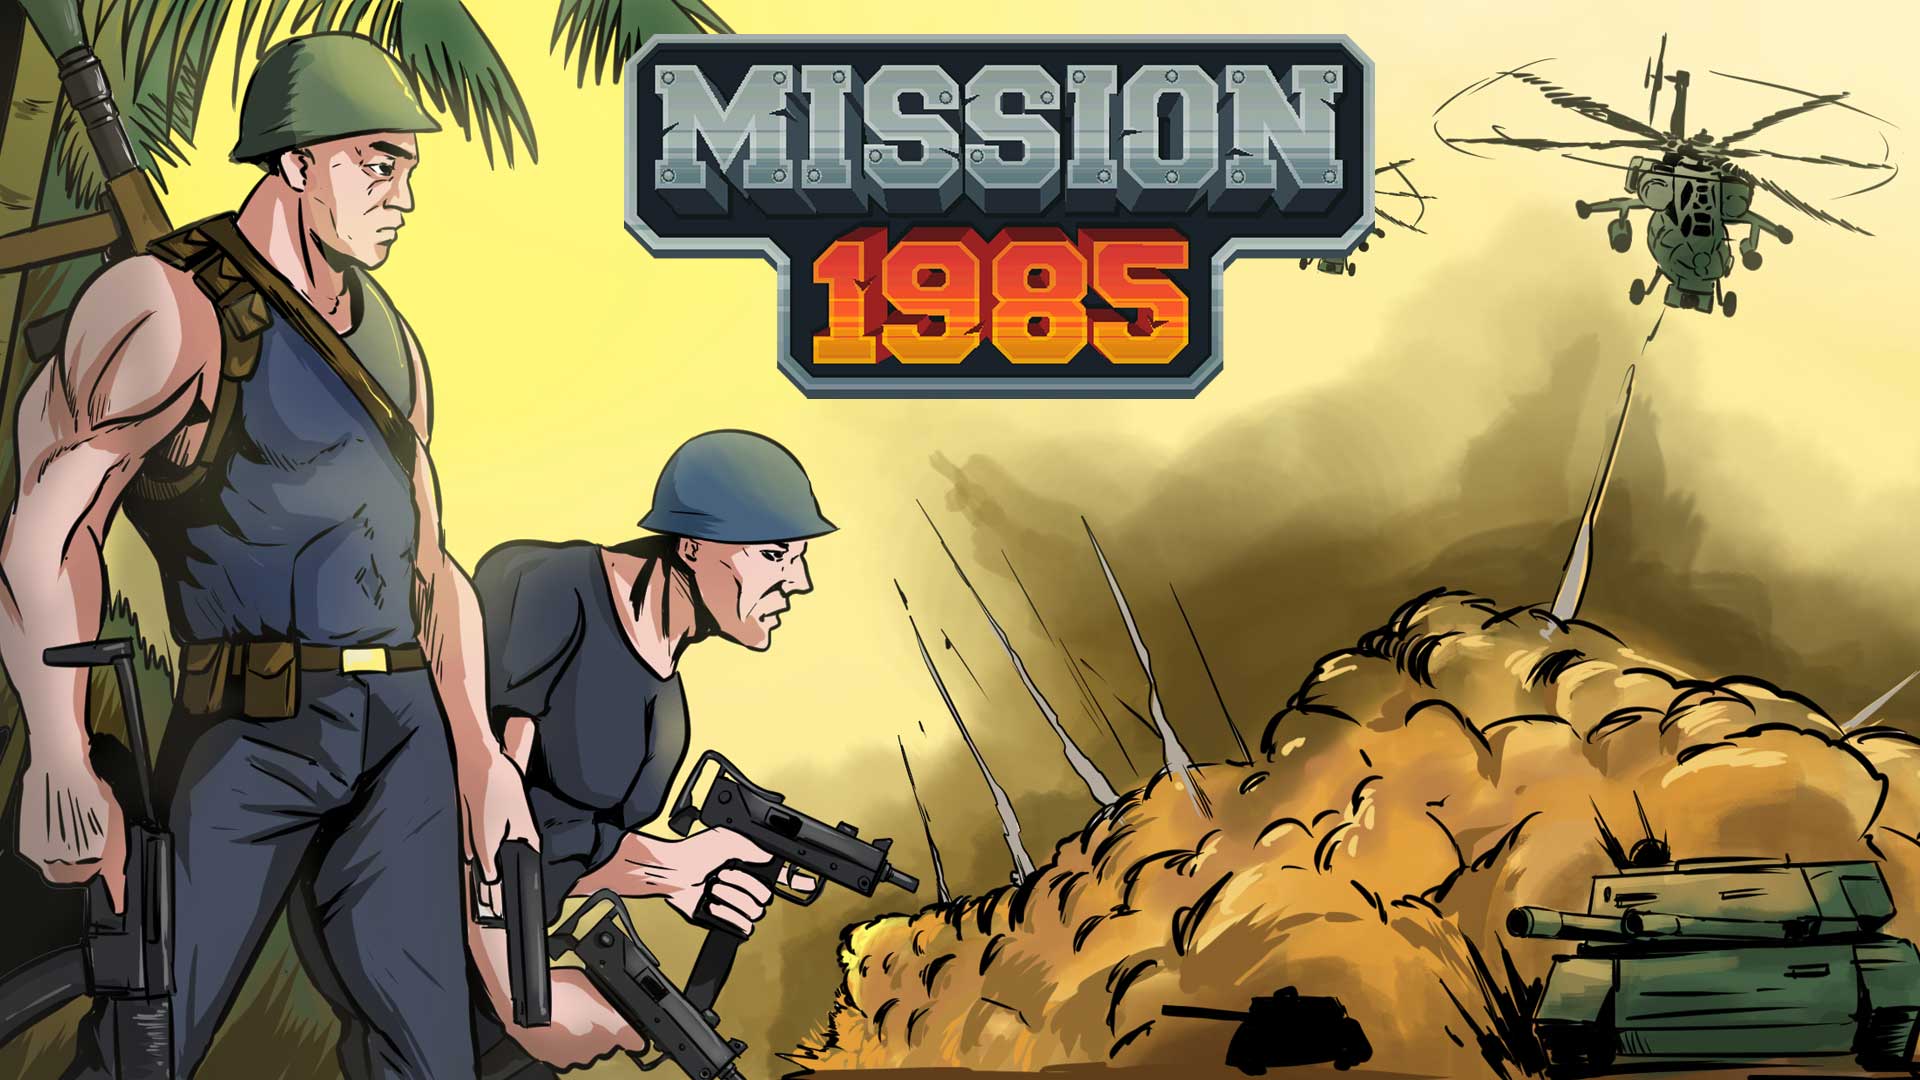 Mission 1985